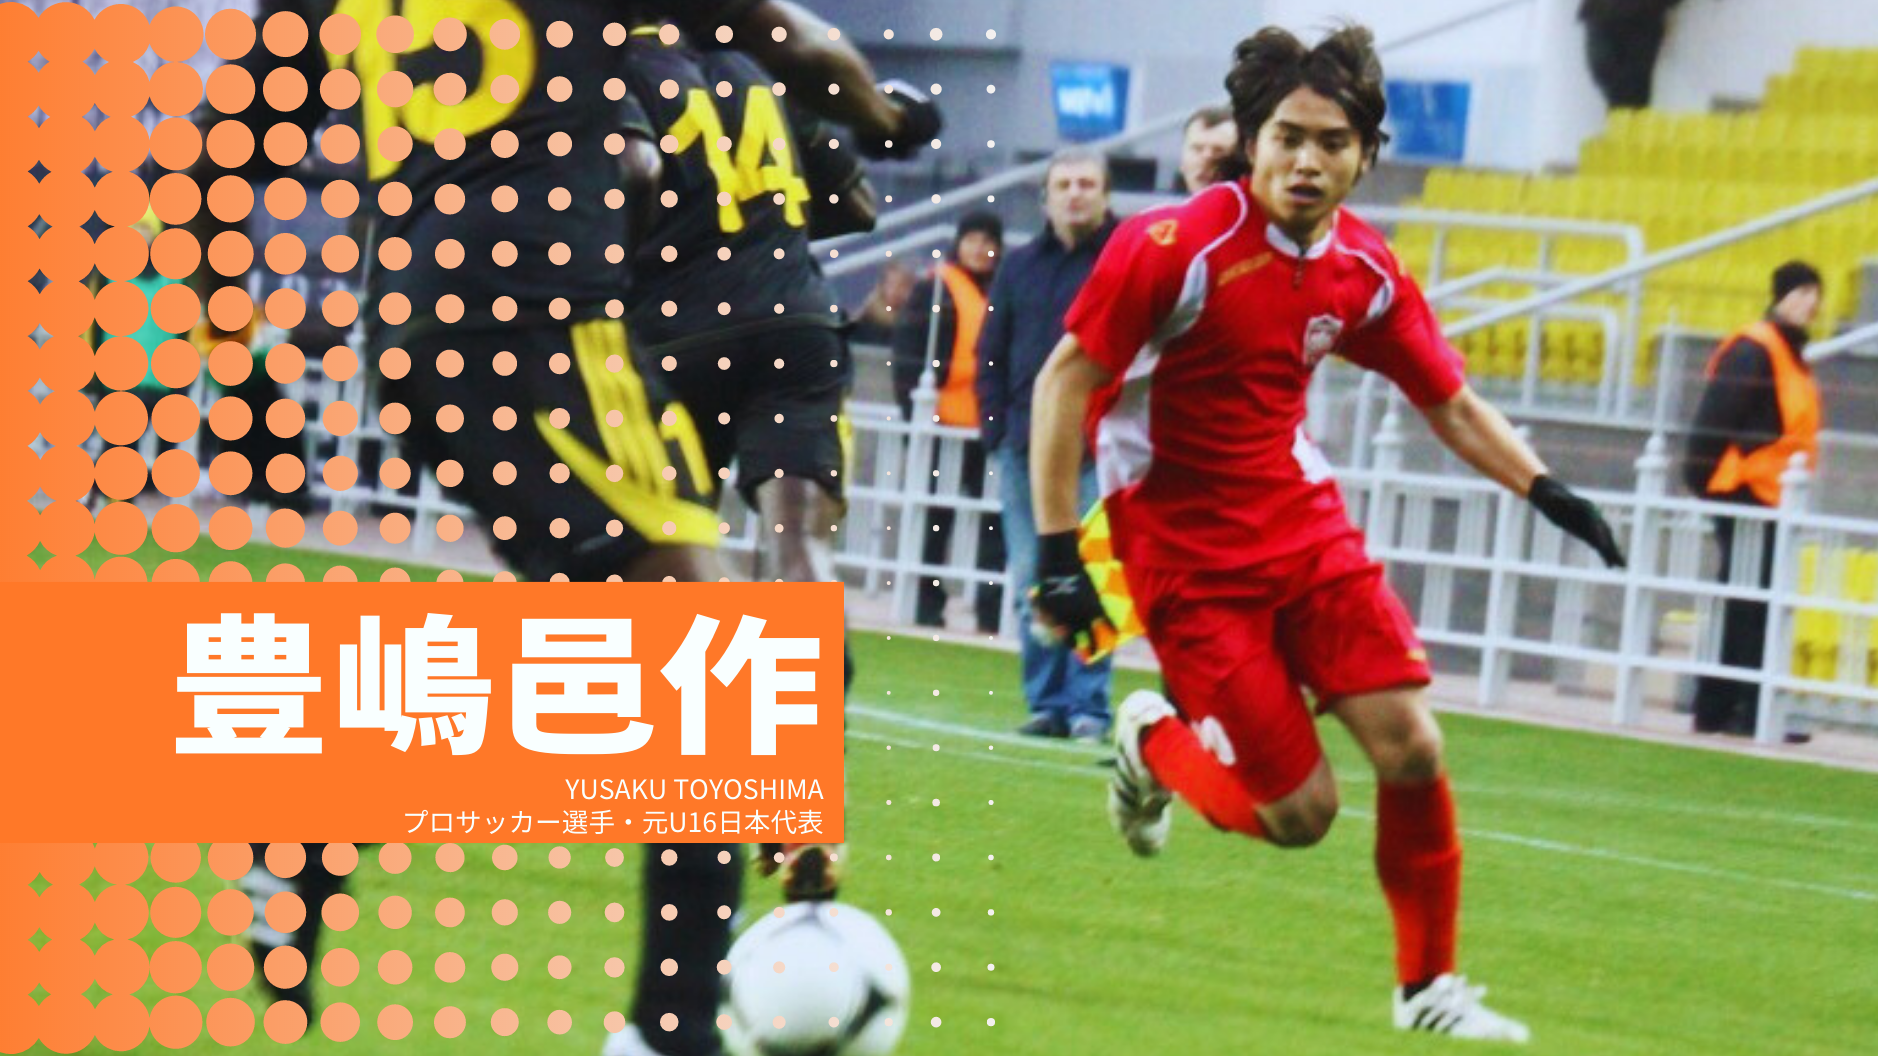 豊嶋邑作
YUSAKU TOYOSHIMA
プロサッカー選手・元U16日本代表